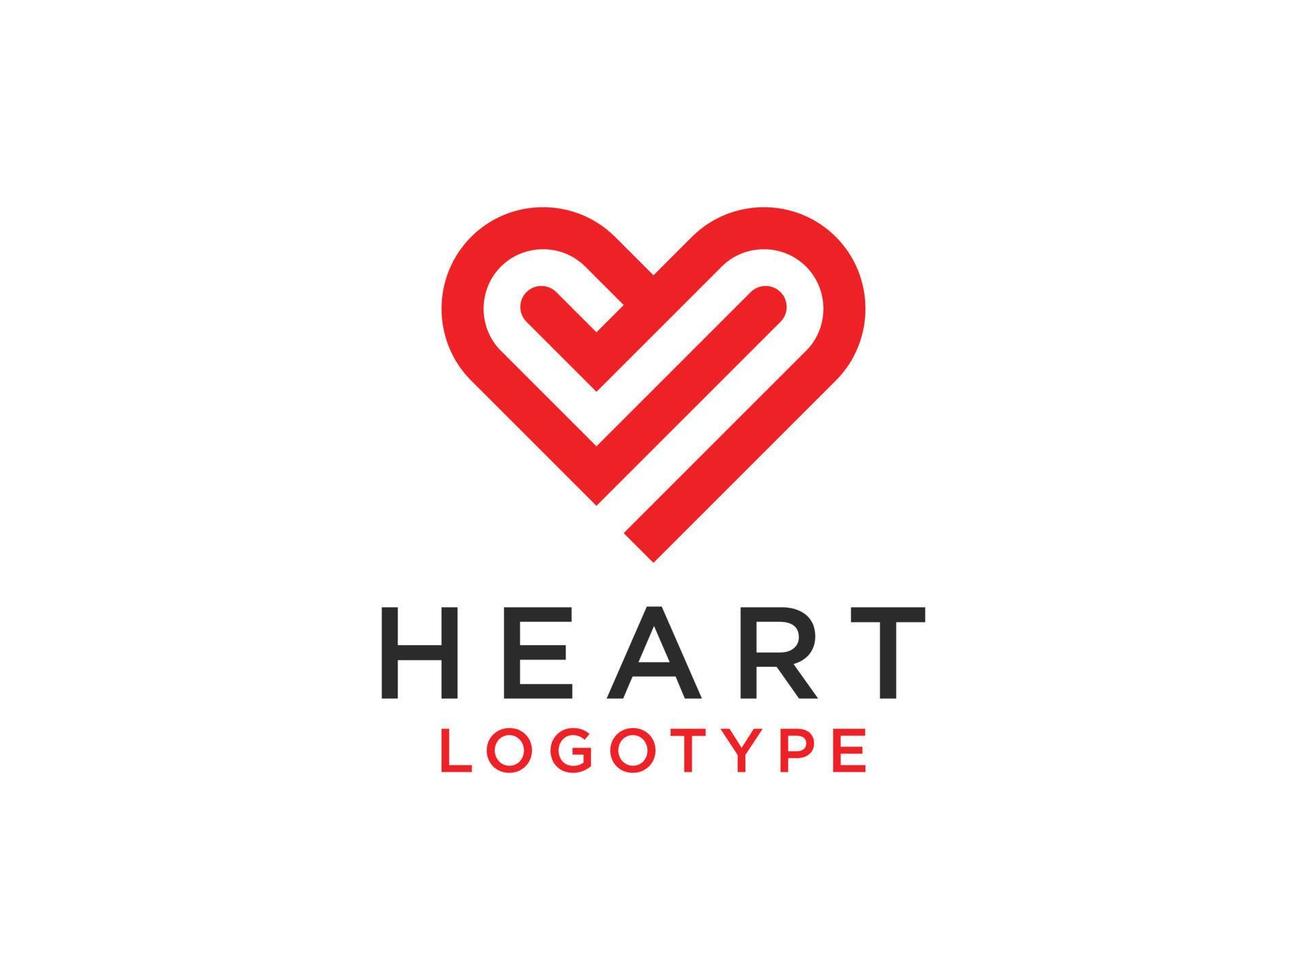 logotipo abstracto del corazón. estilo de caligrafía de corazón dibujado a mano decorativo rojo aislado sobre fondo blanco. elemento de plantilla de diseño de ilustración de vector plano.